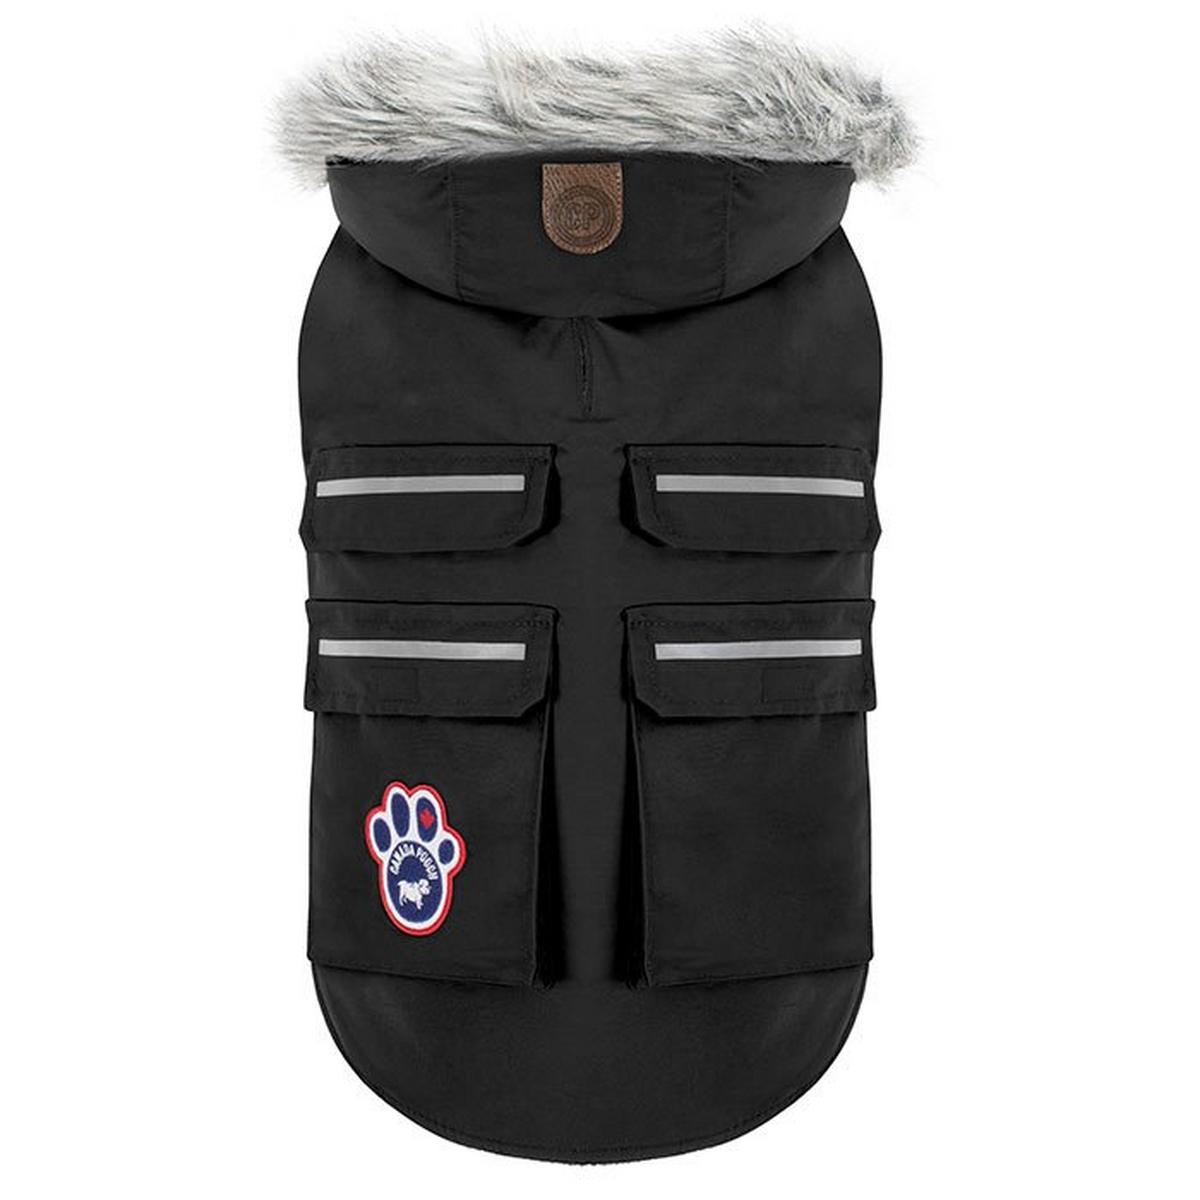 Everest Explorer Dog Jacket (Size 18)